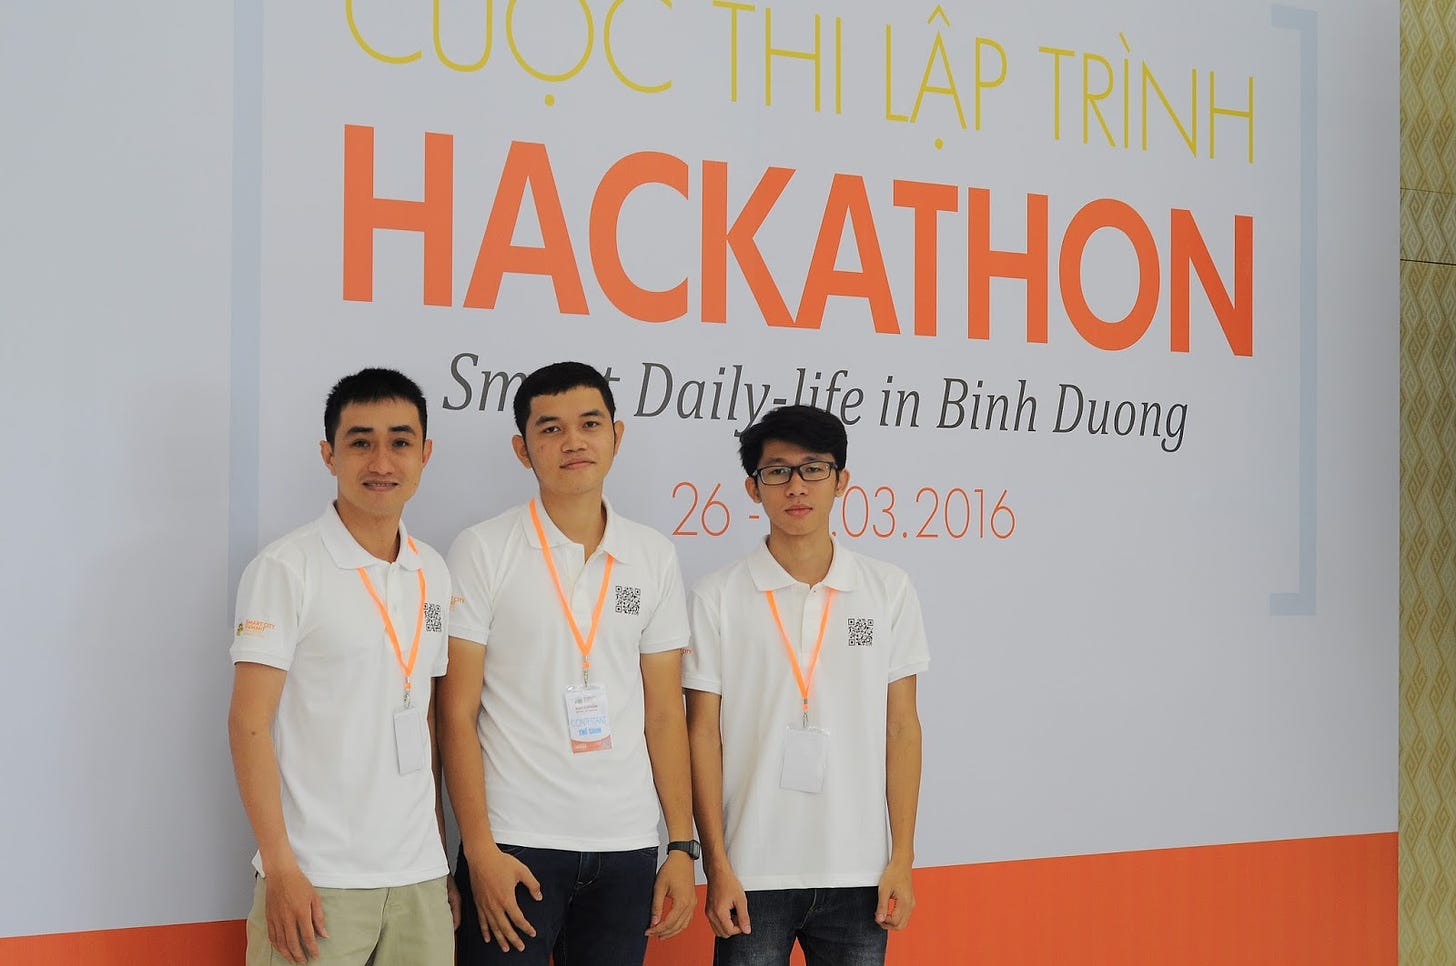 Cuộc thi hackathon đầu tiên mình tham gia và những chia sẻ